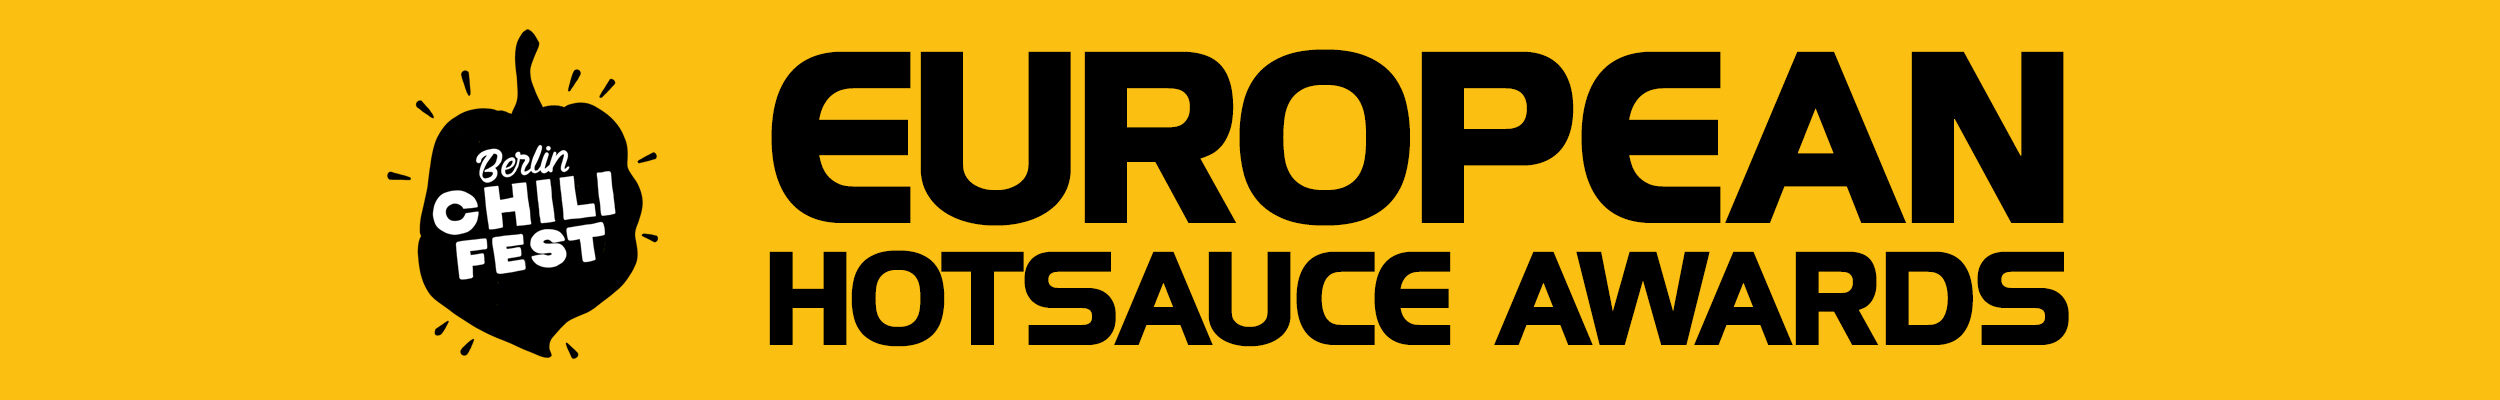 European Hot Sauce Awards